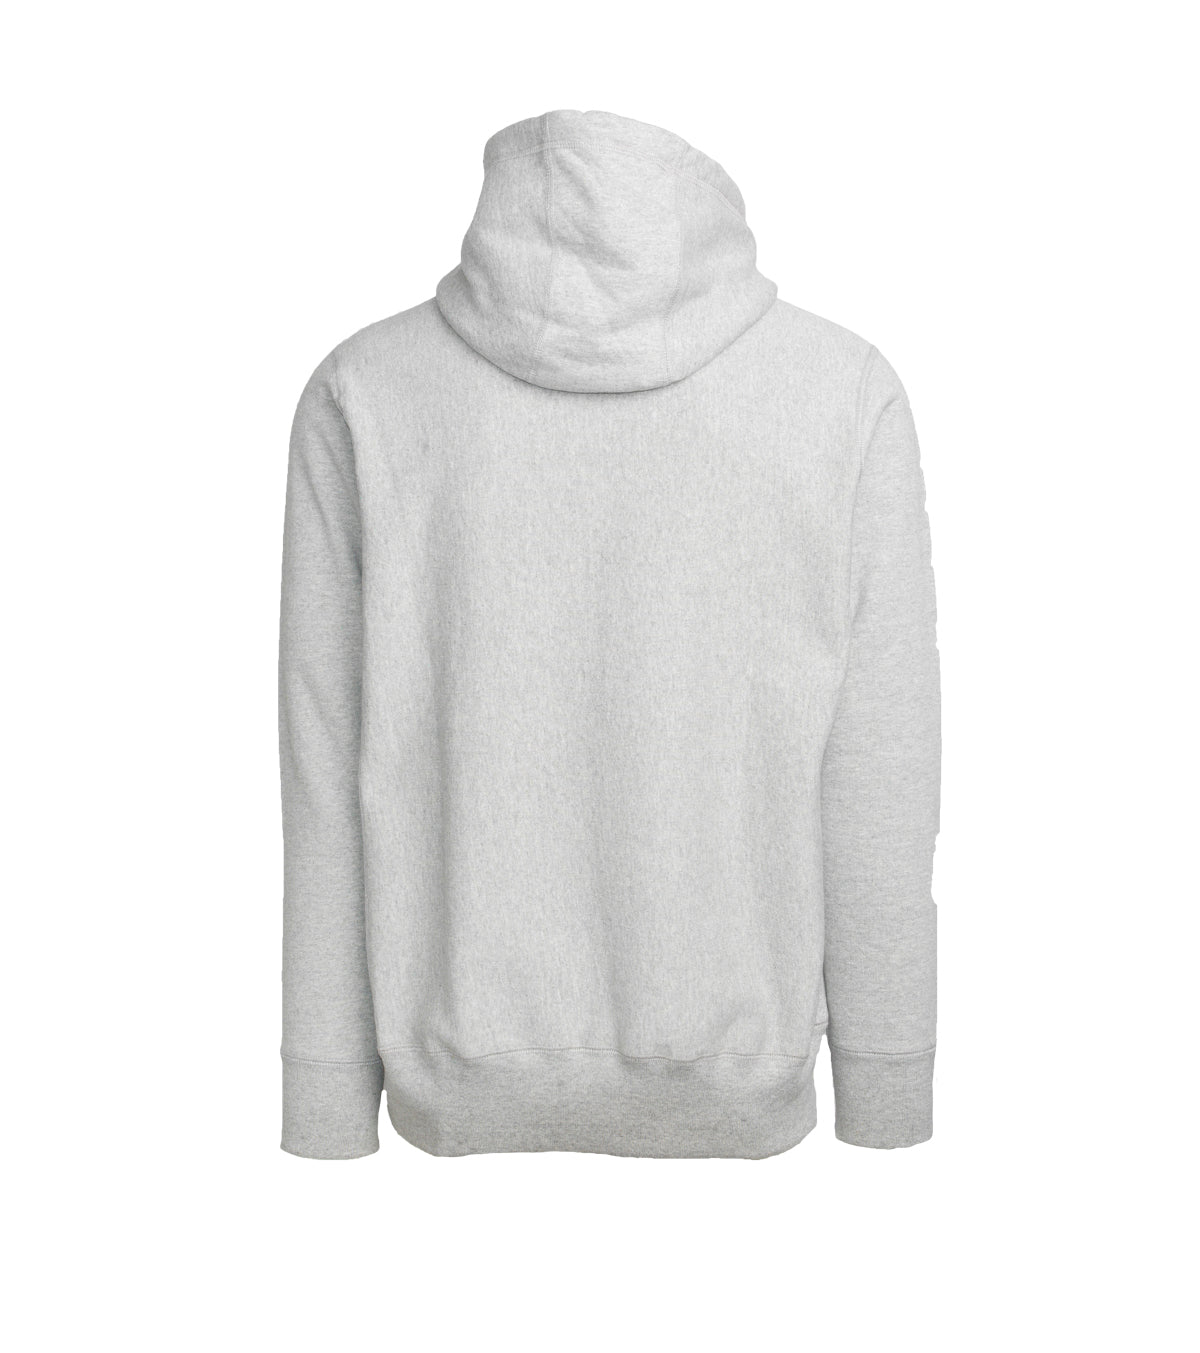 Hooded Sweatshirt - Heather Grey